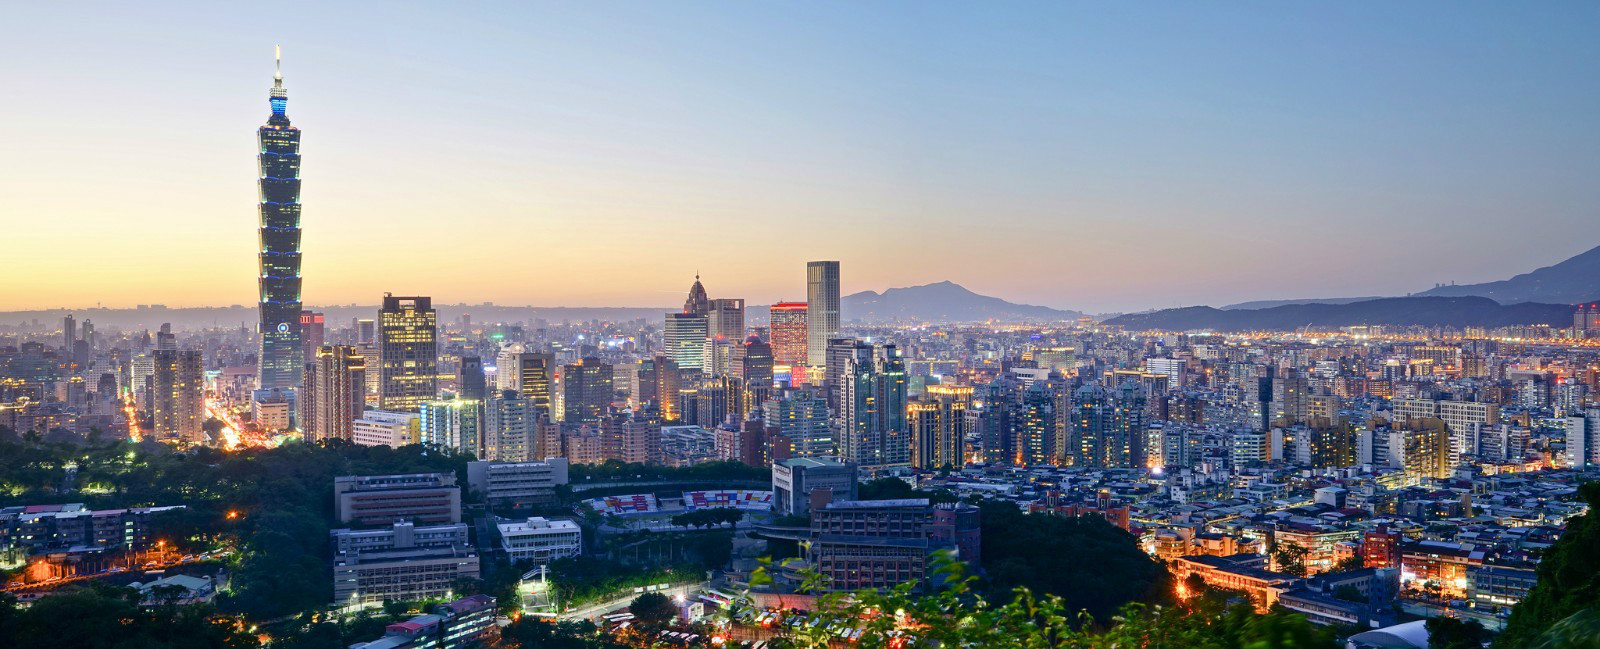 台灣政治、經濟與文化發展的中心台北市